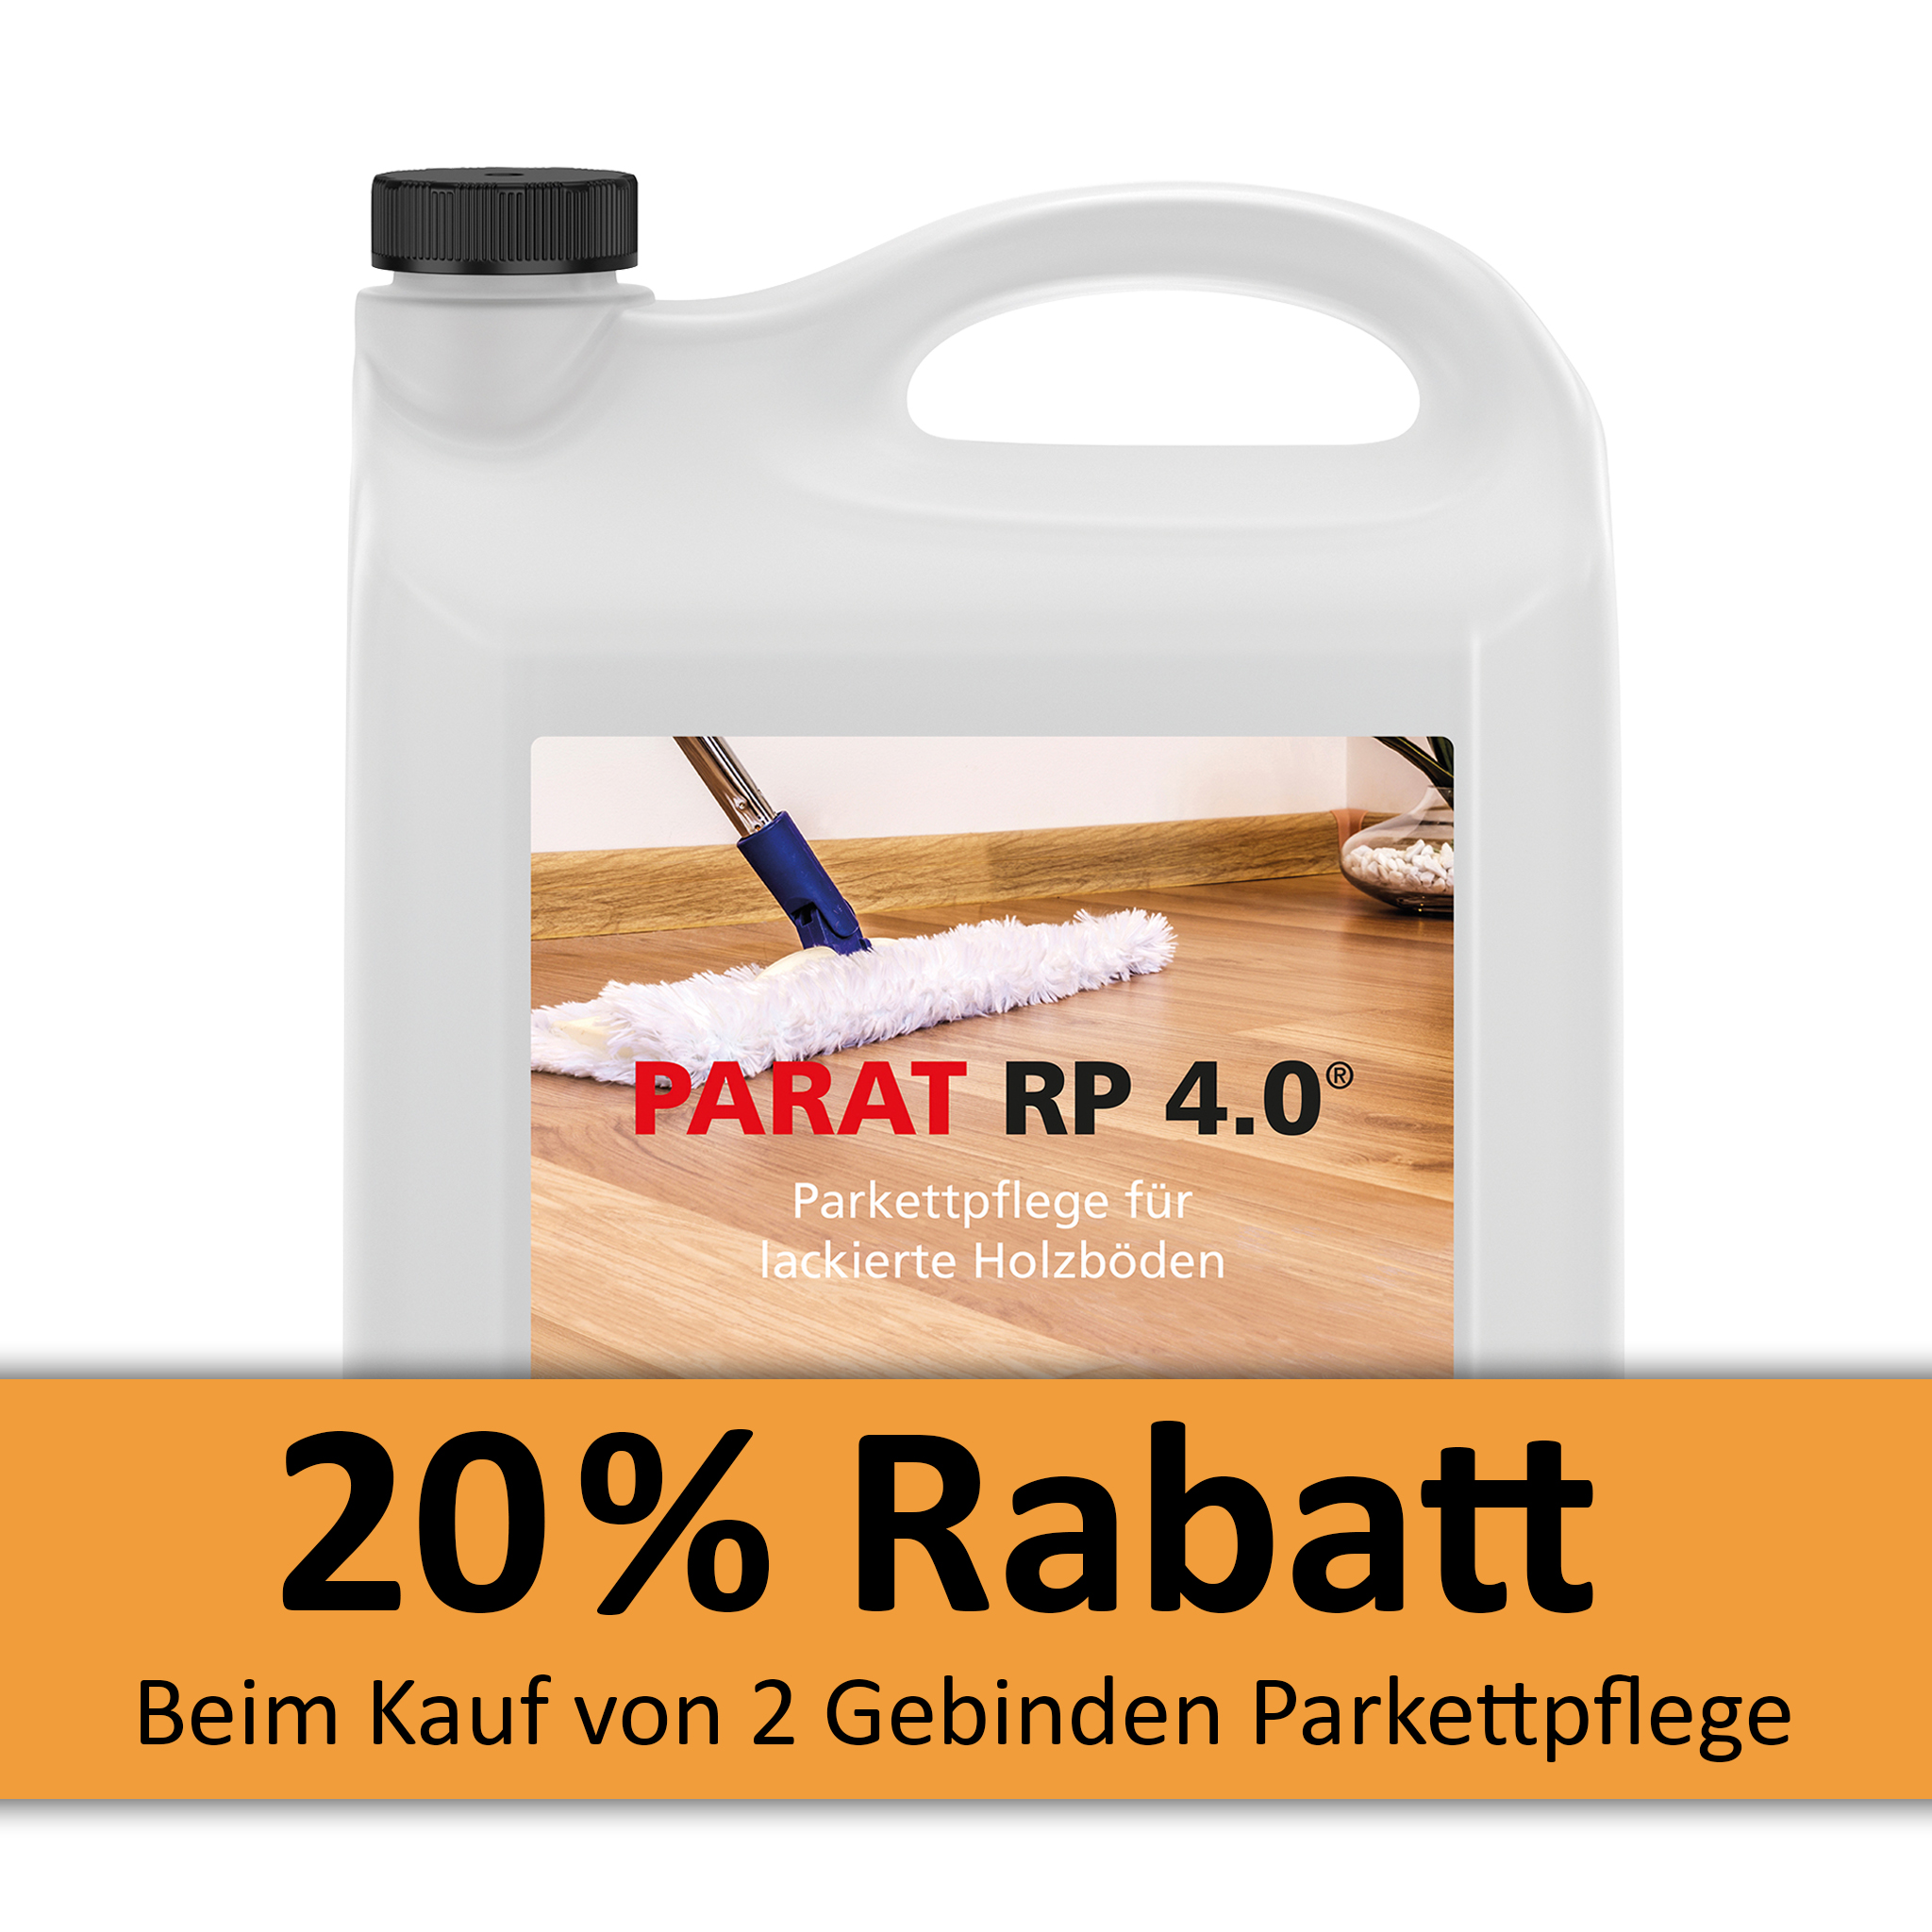 PARAT RP 4.0 Péče o parkety 5 litr.